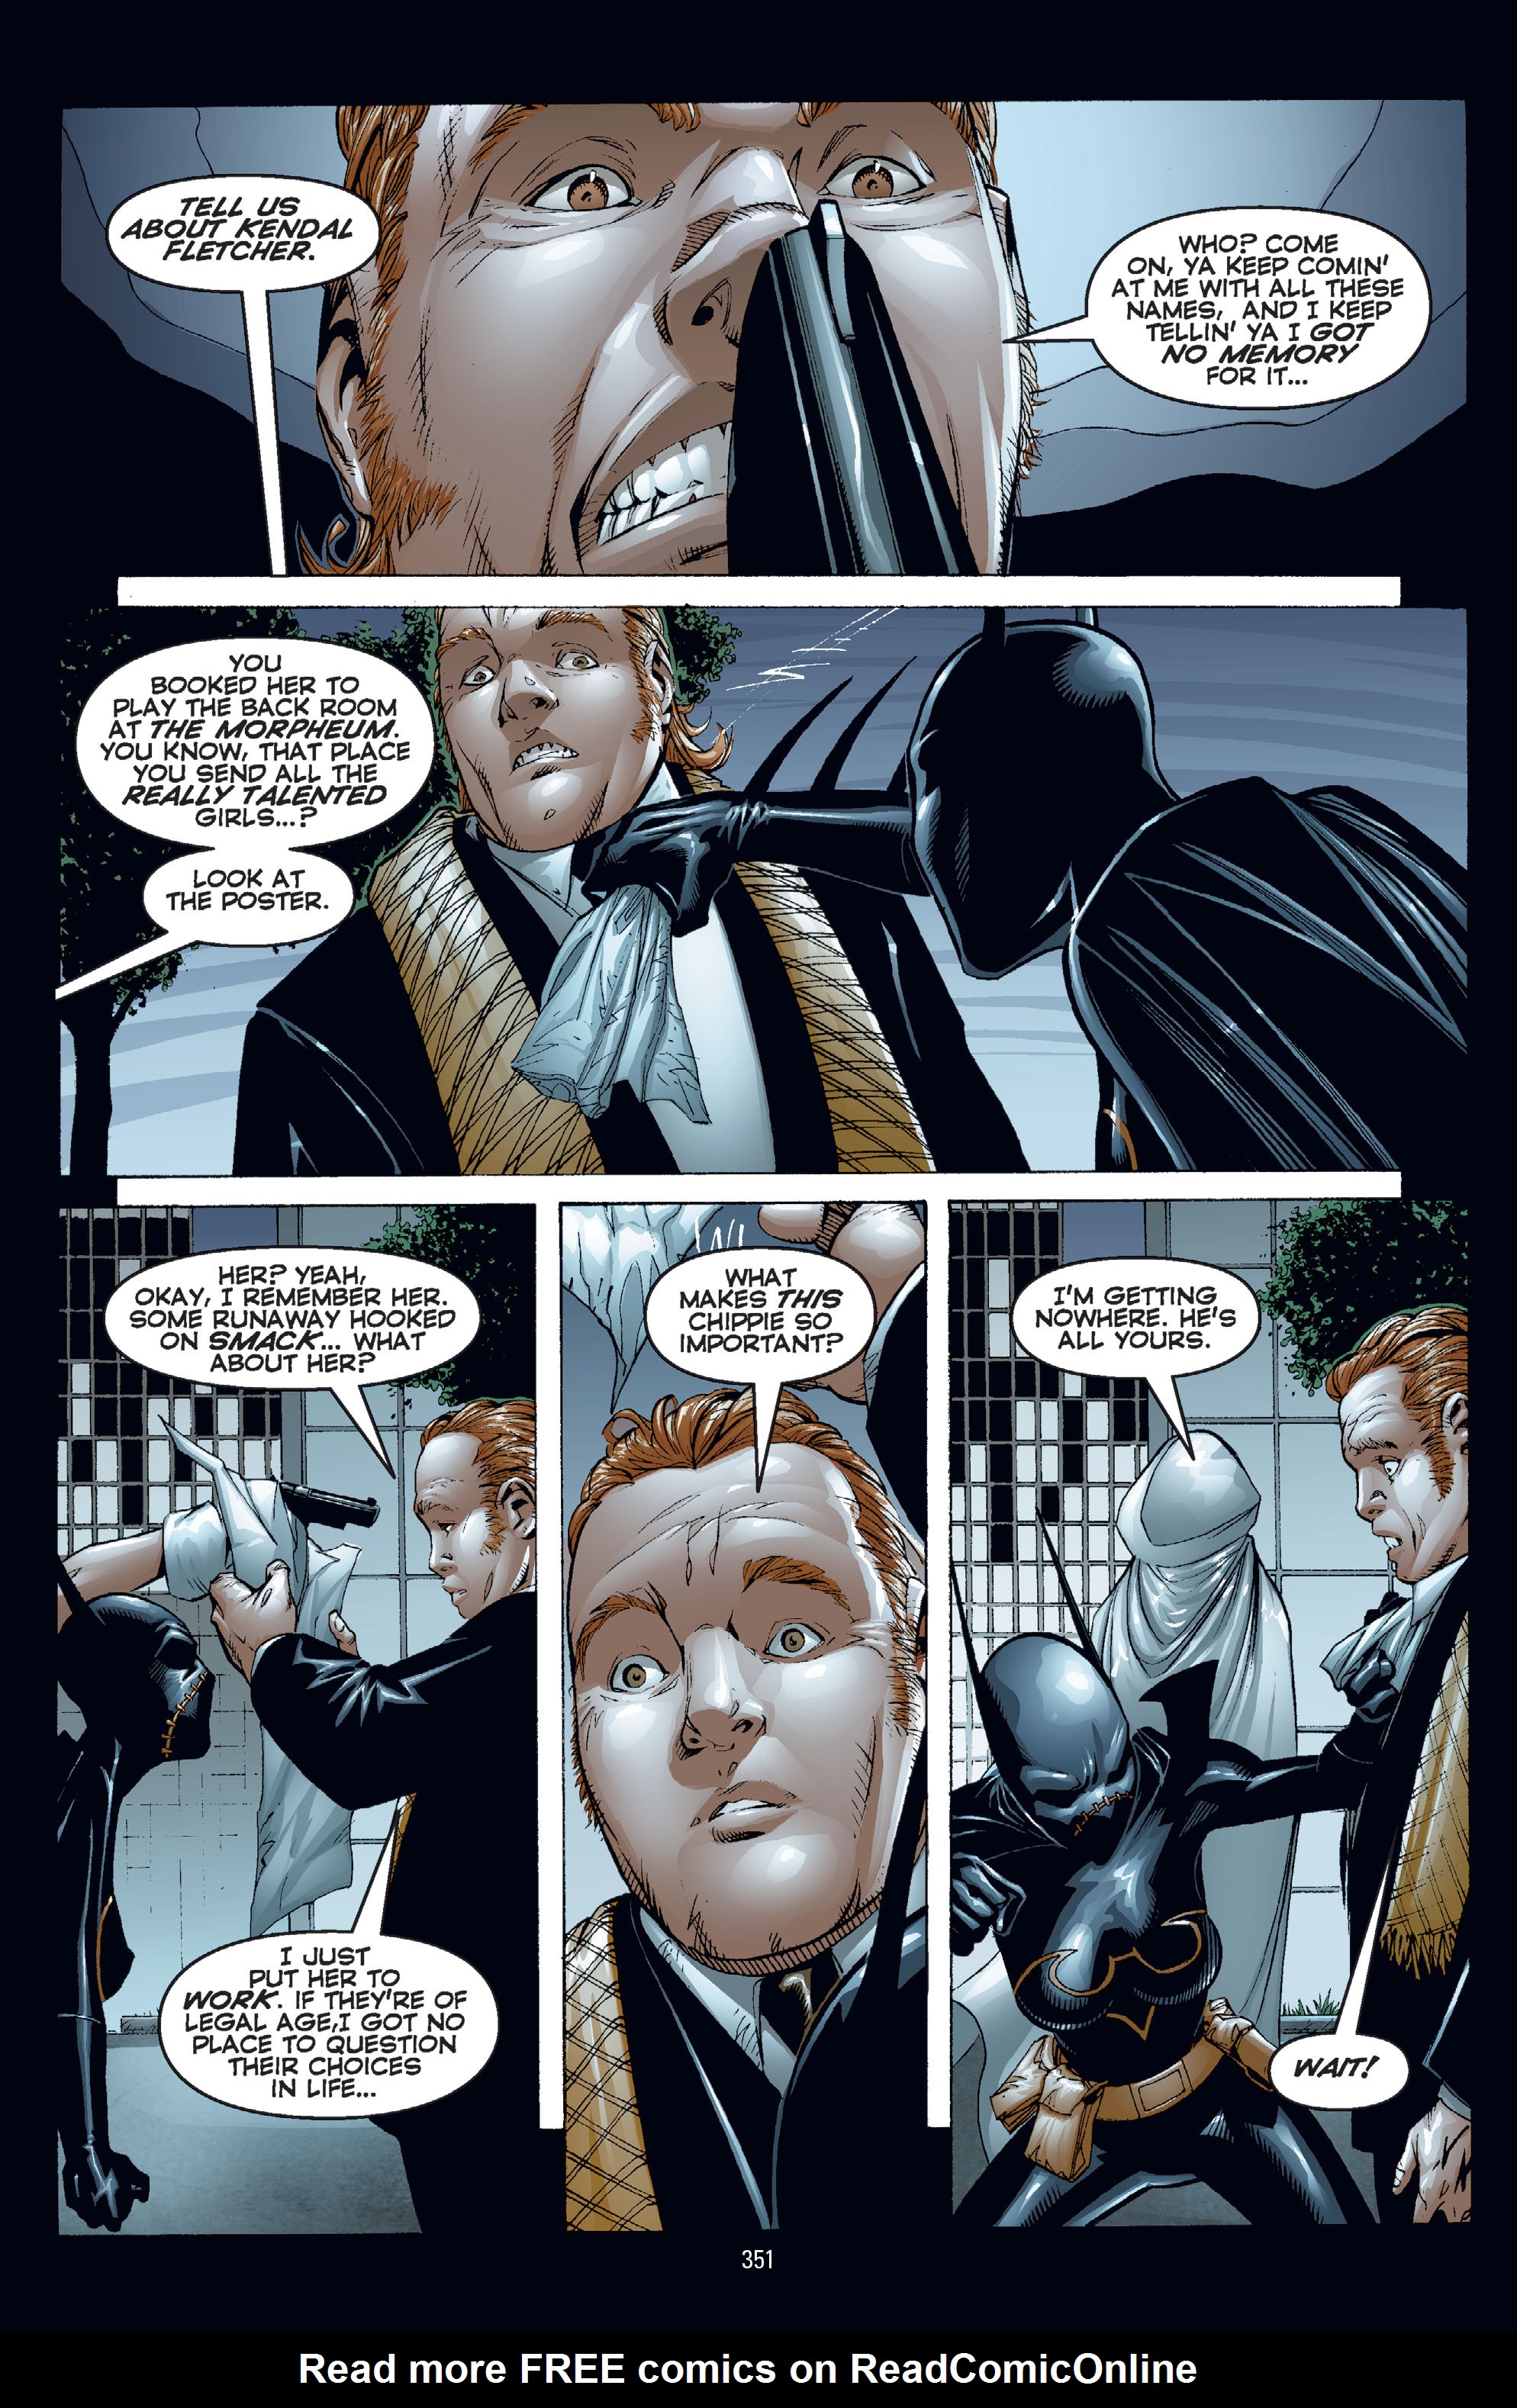 DC Comics/Dark Horse Comics: Justice League Full #1 - English 341